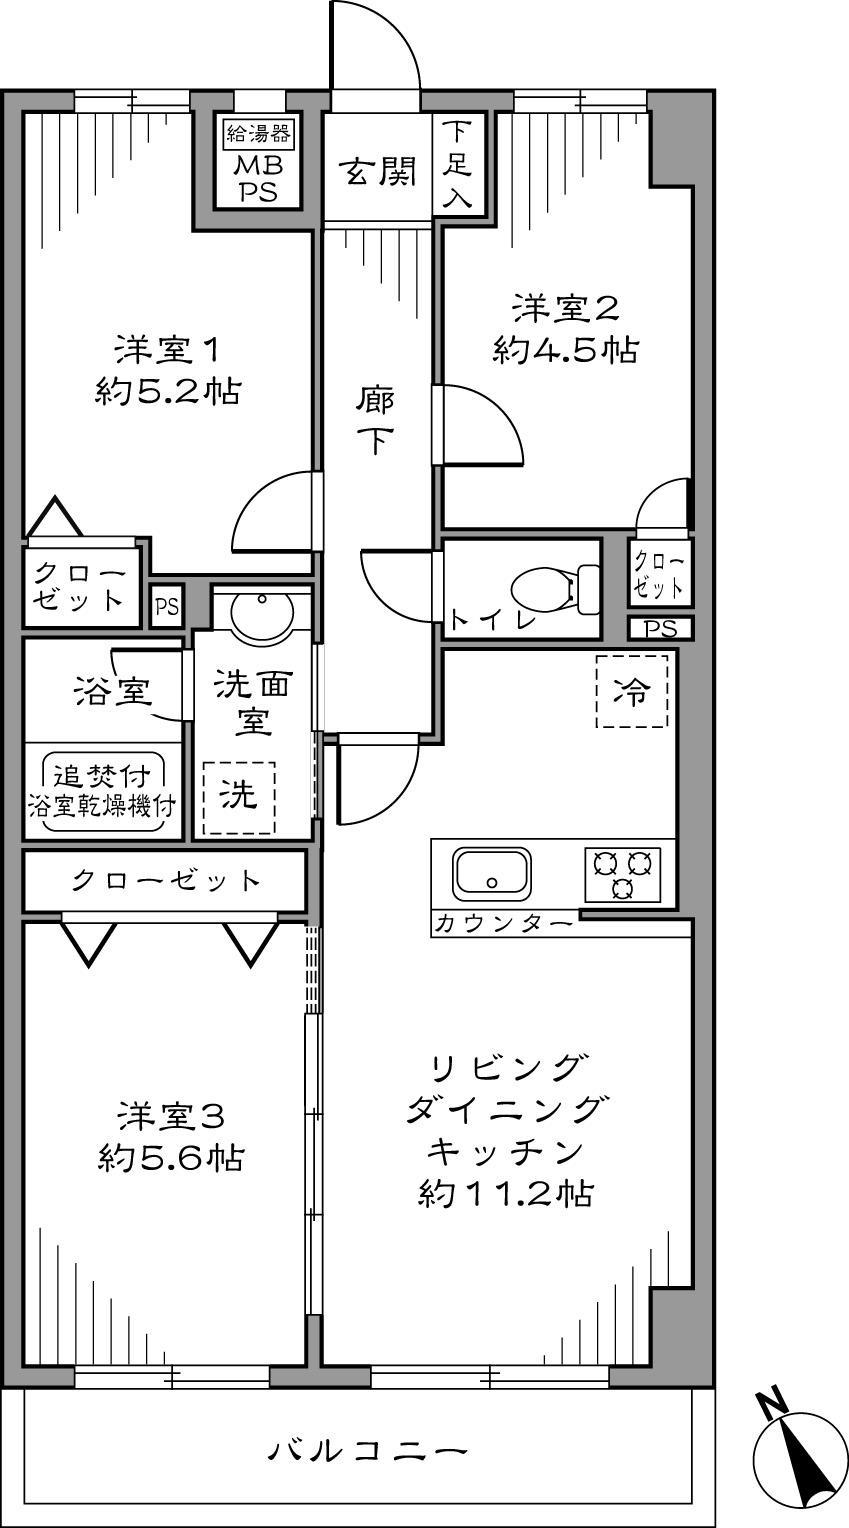 Floor plan. 3LDK 32,800,000 yen Occupied area 58.57 sq m